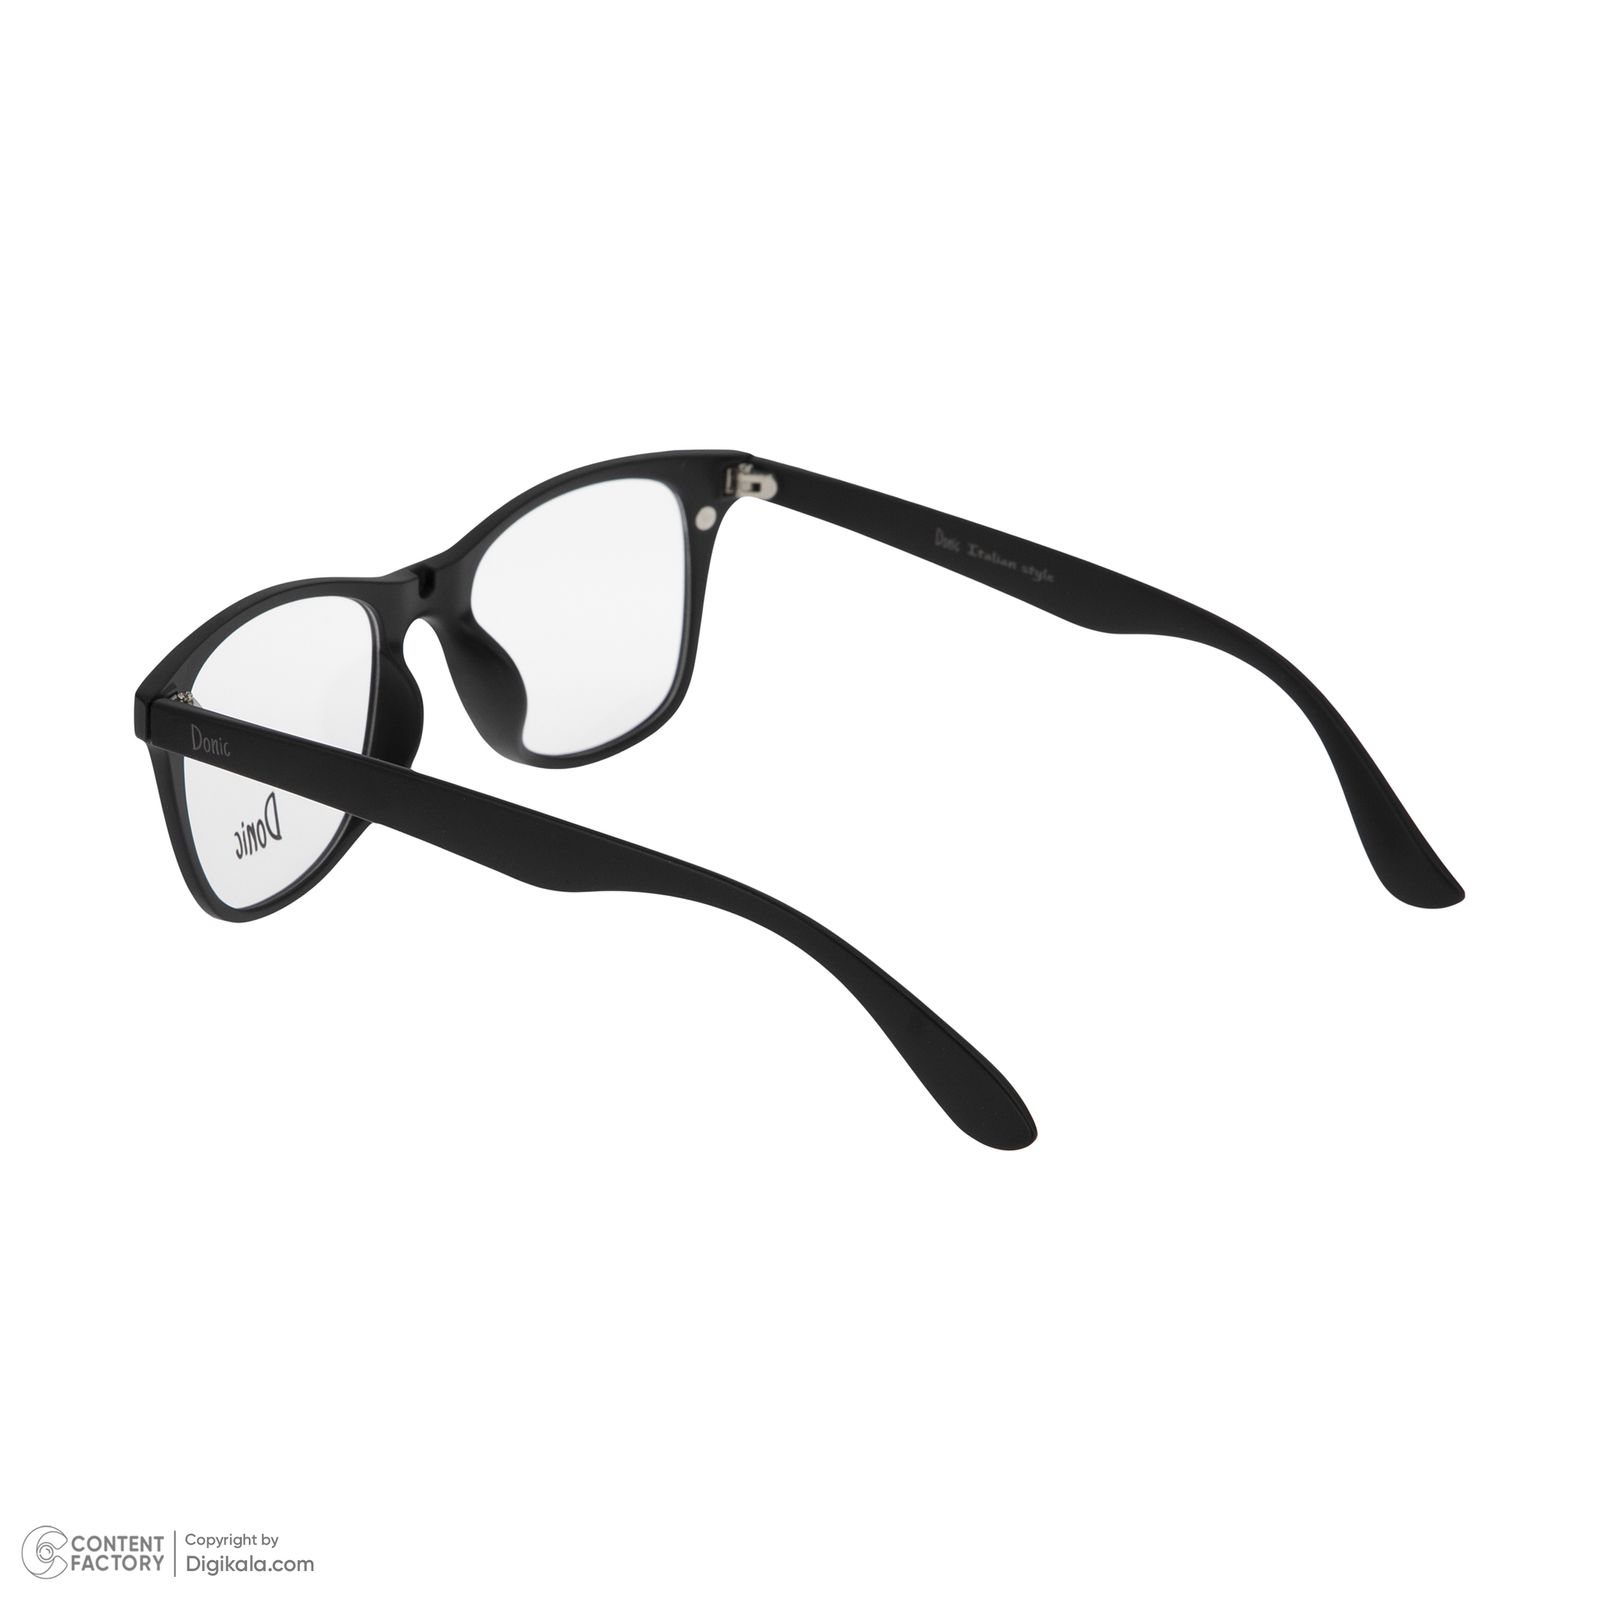 فریم عینک طبی دونیک مدل tr2208-c2 به همراه کاور آفتابی مجموعه 6 عددی -  - 5